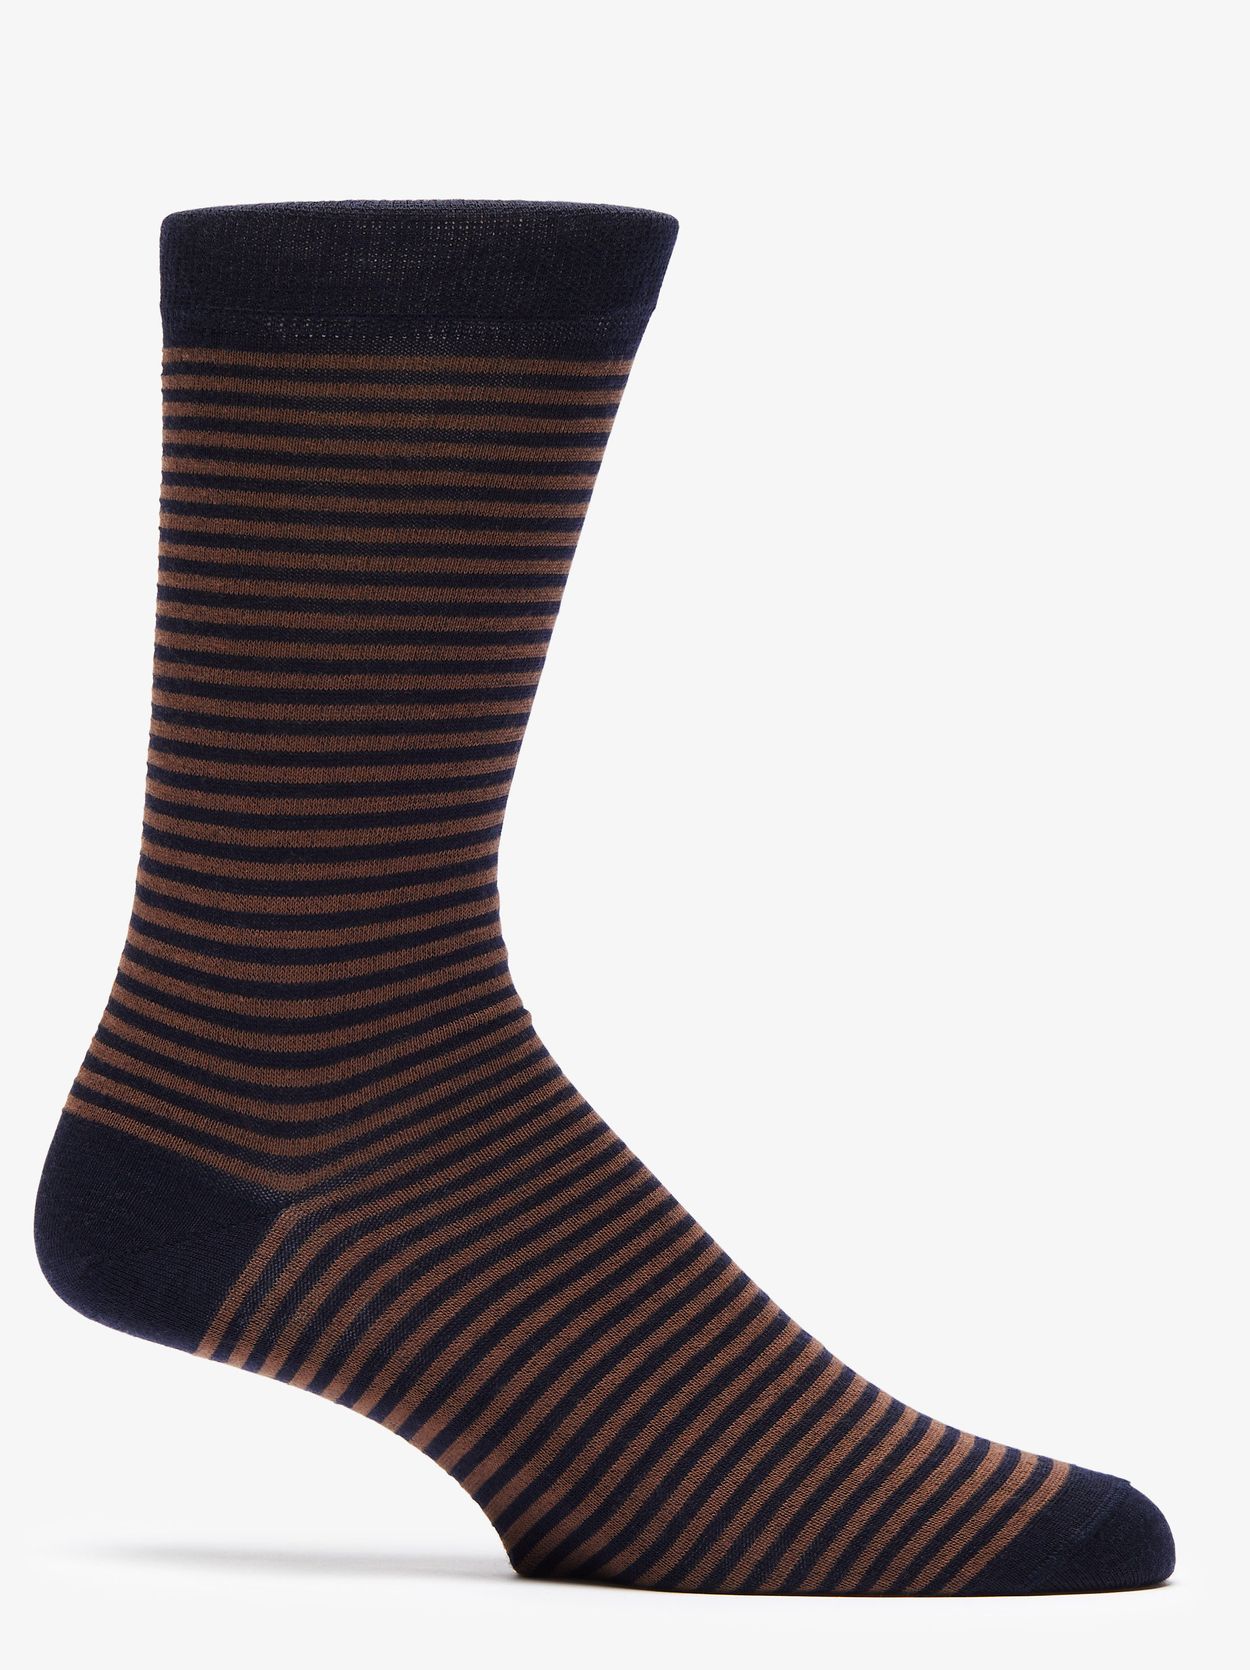 Blue & Brown Socks Niles